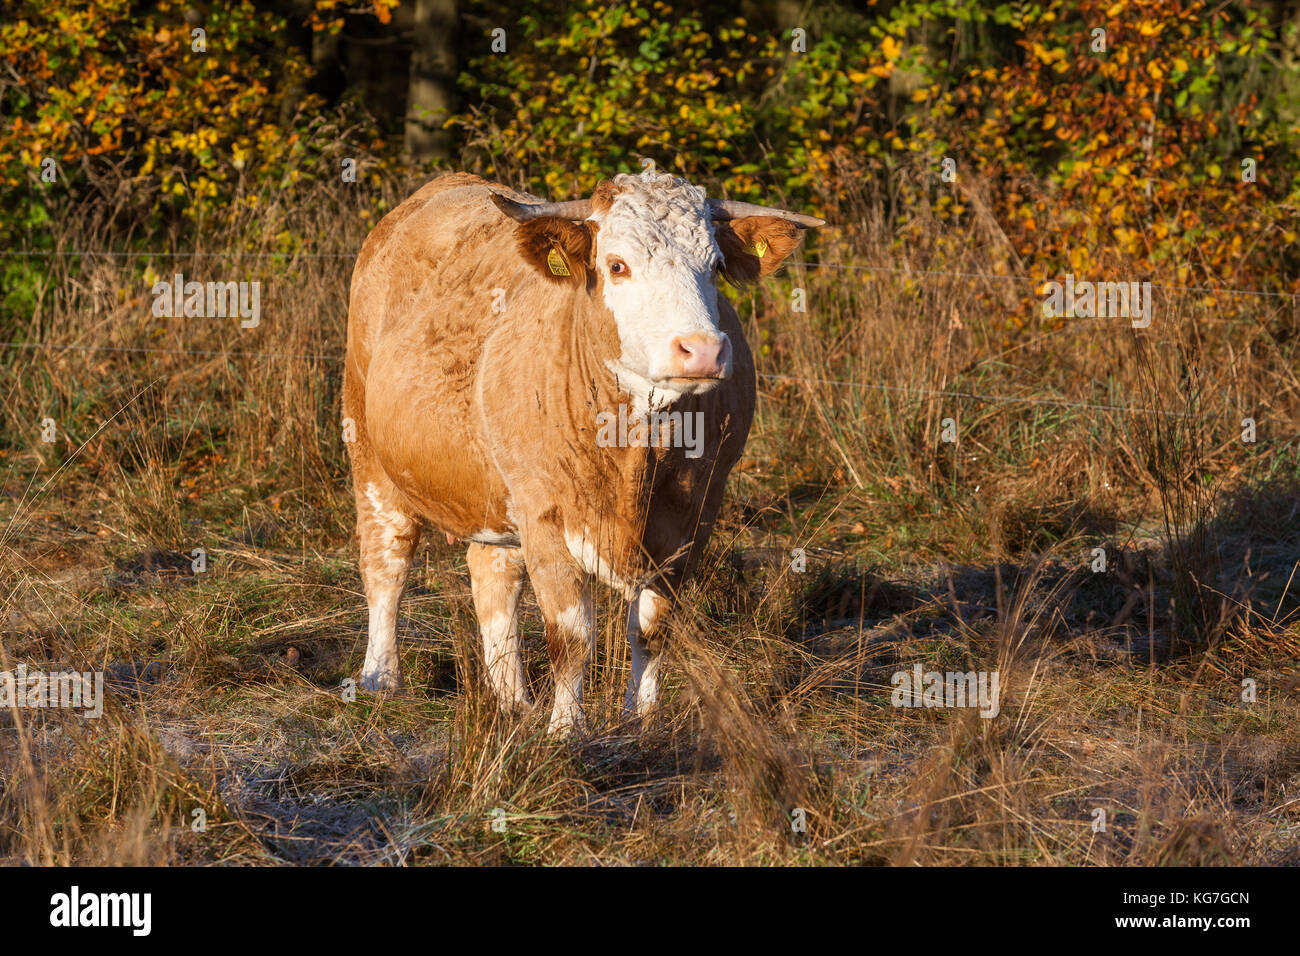 Landwirtschaft Tierhaltung Freiland Kuhherde Stock Photo